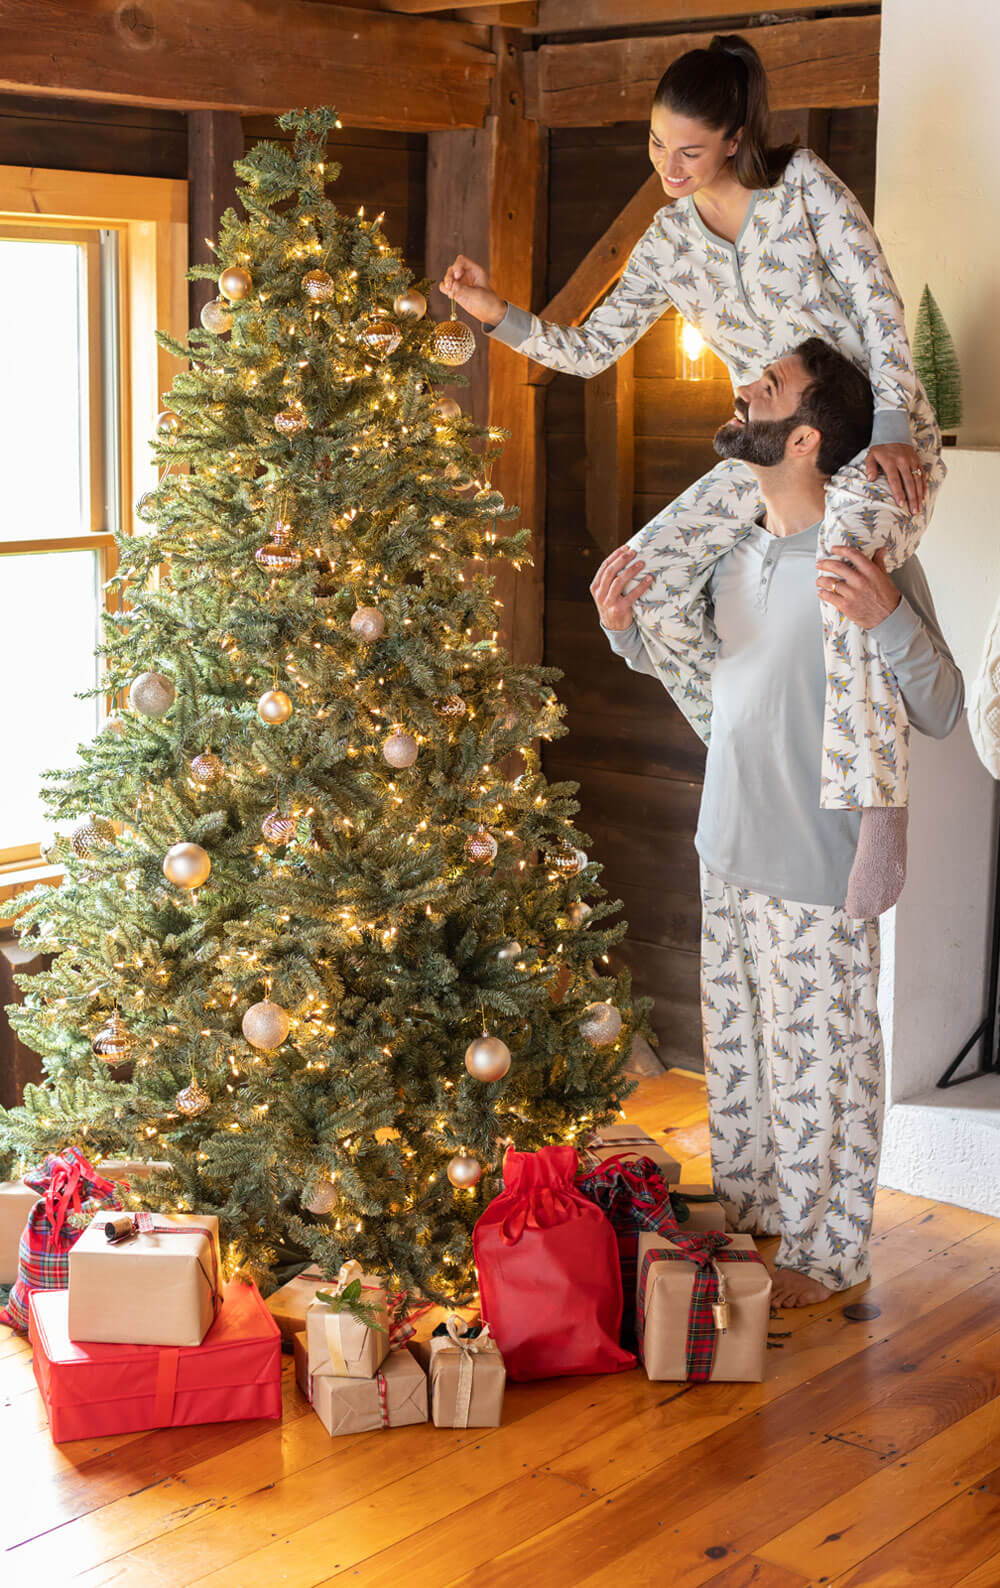 Juletræ print familie pyjamas